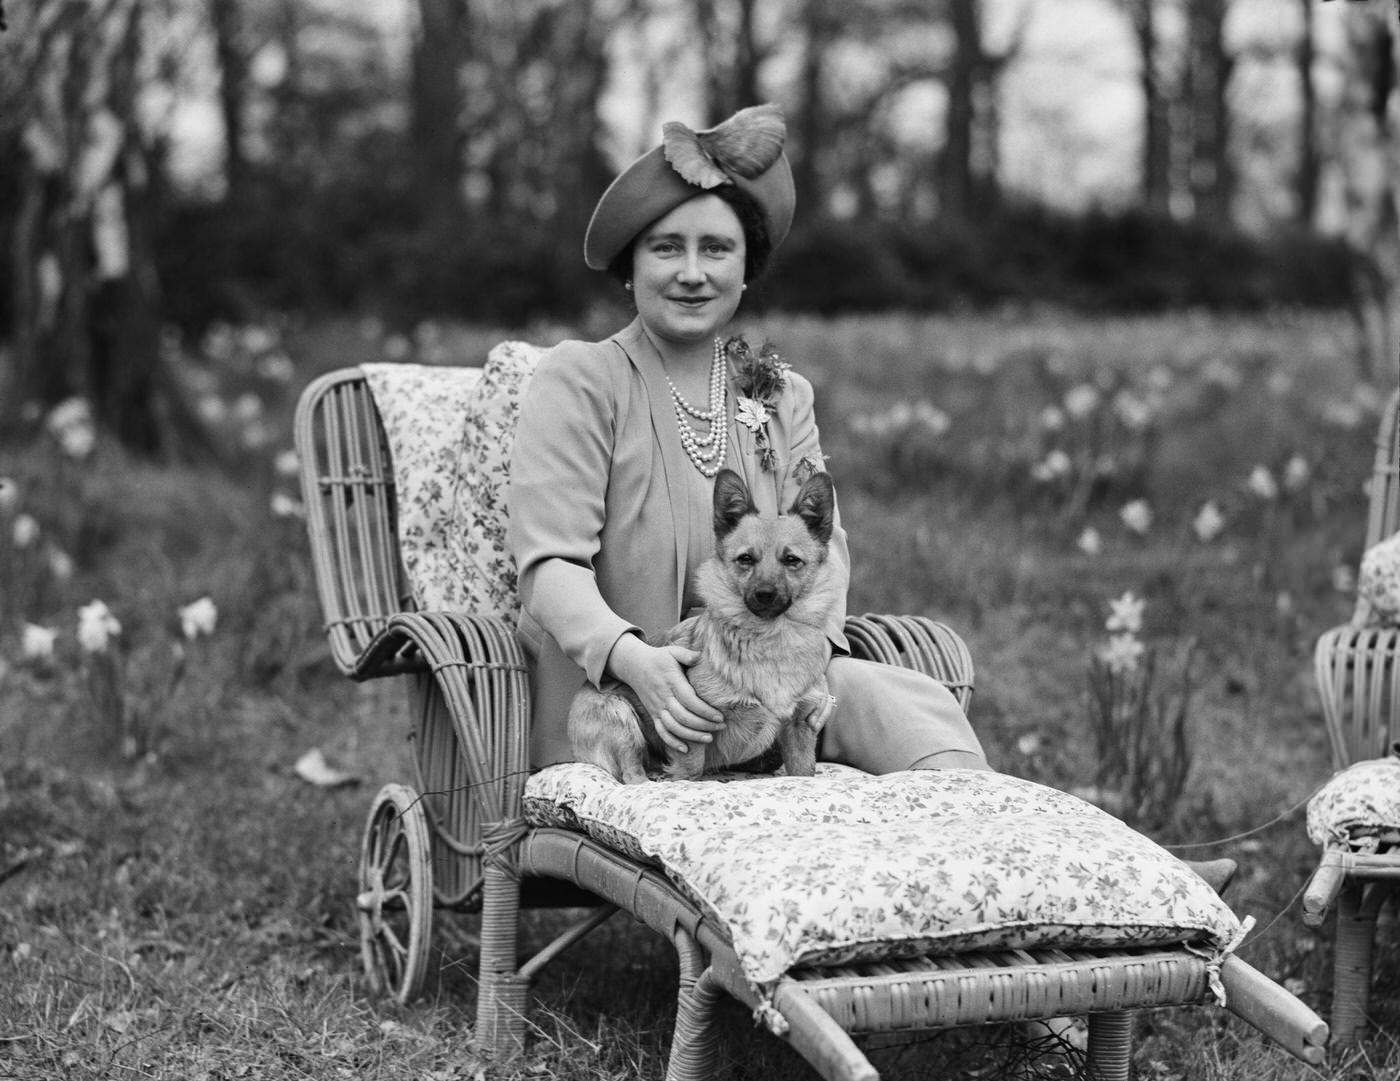 Queen Elizabeth with a Pembroke Welsh Corgi dog at Royal Lodge, Windsor Great Park, April 1940.